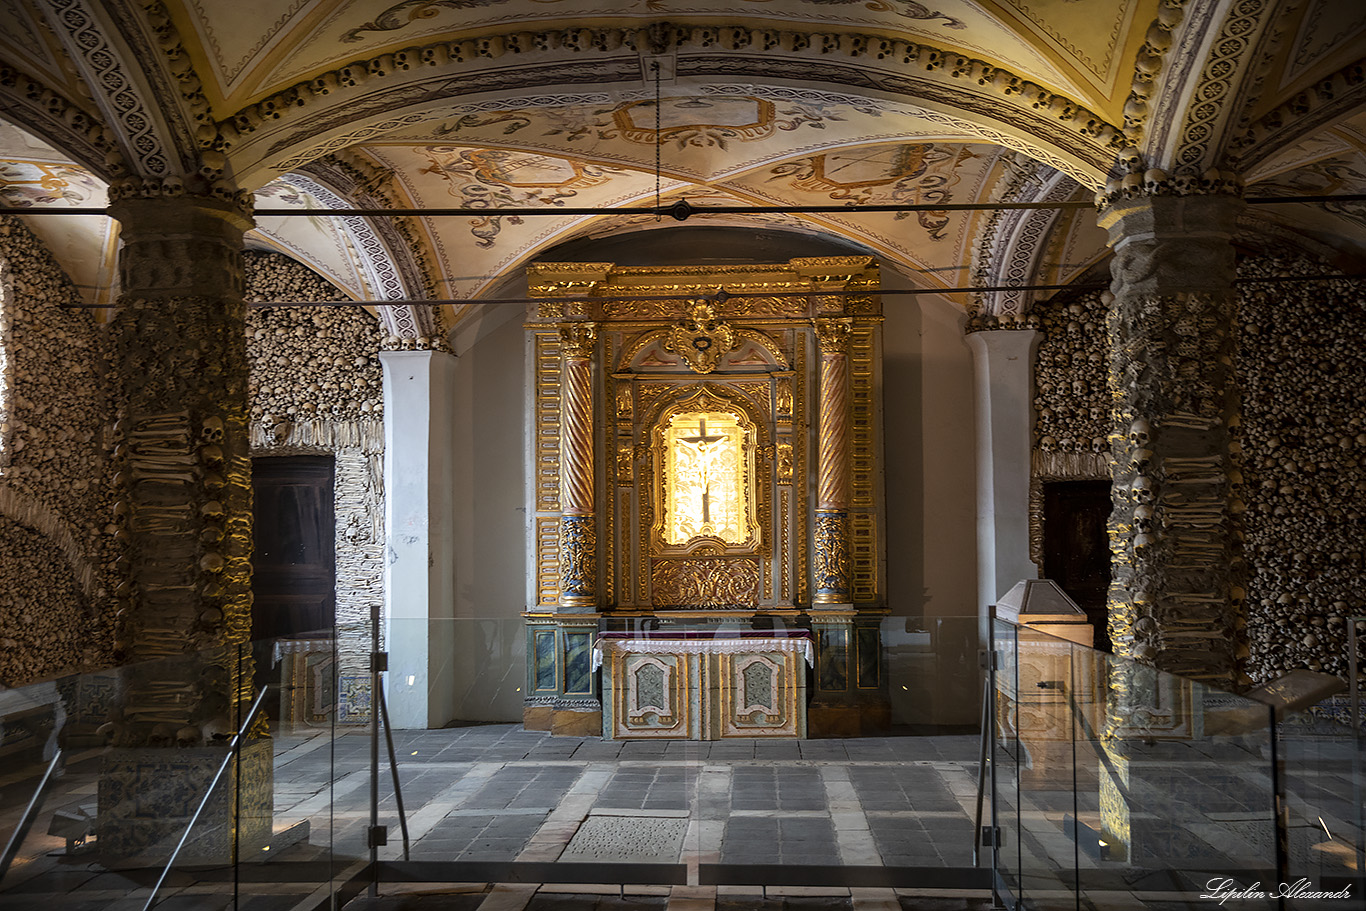 Церковь святого Франциска - Часовня из костей Осуш в Эворе (Capela dos Ossos)